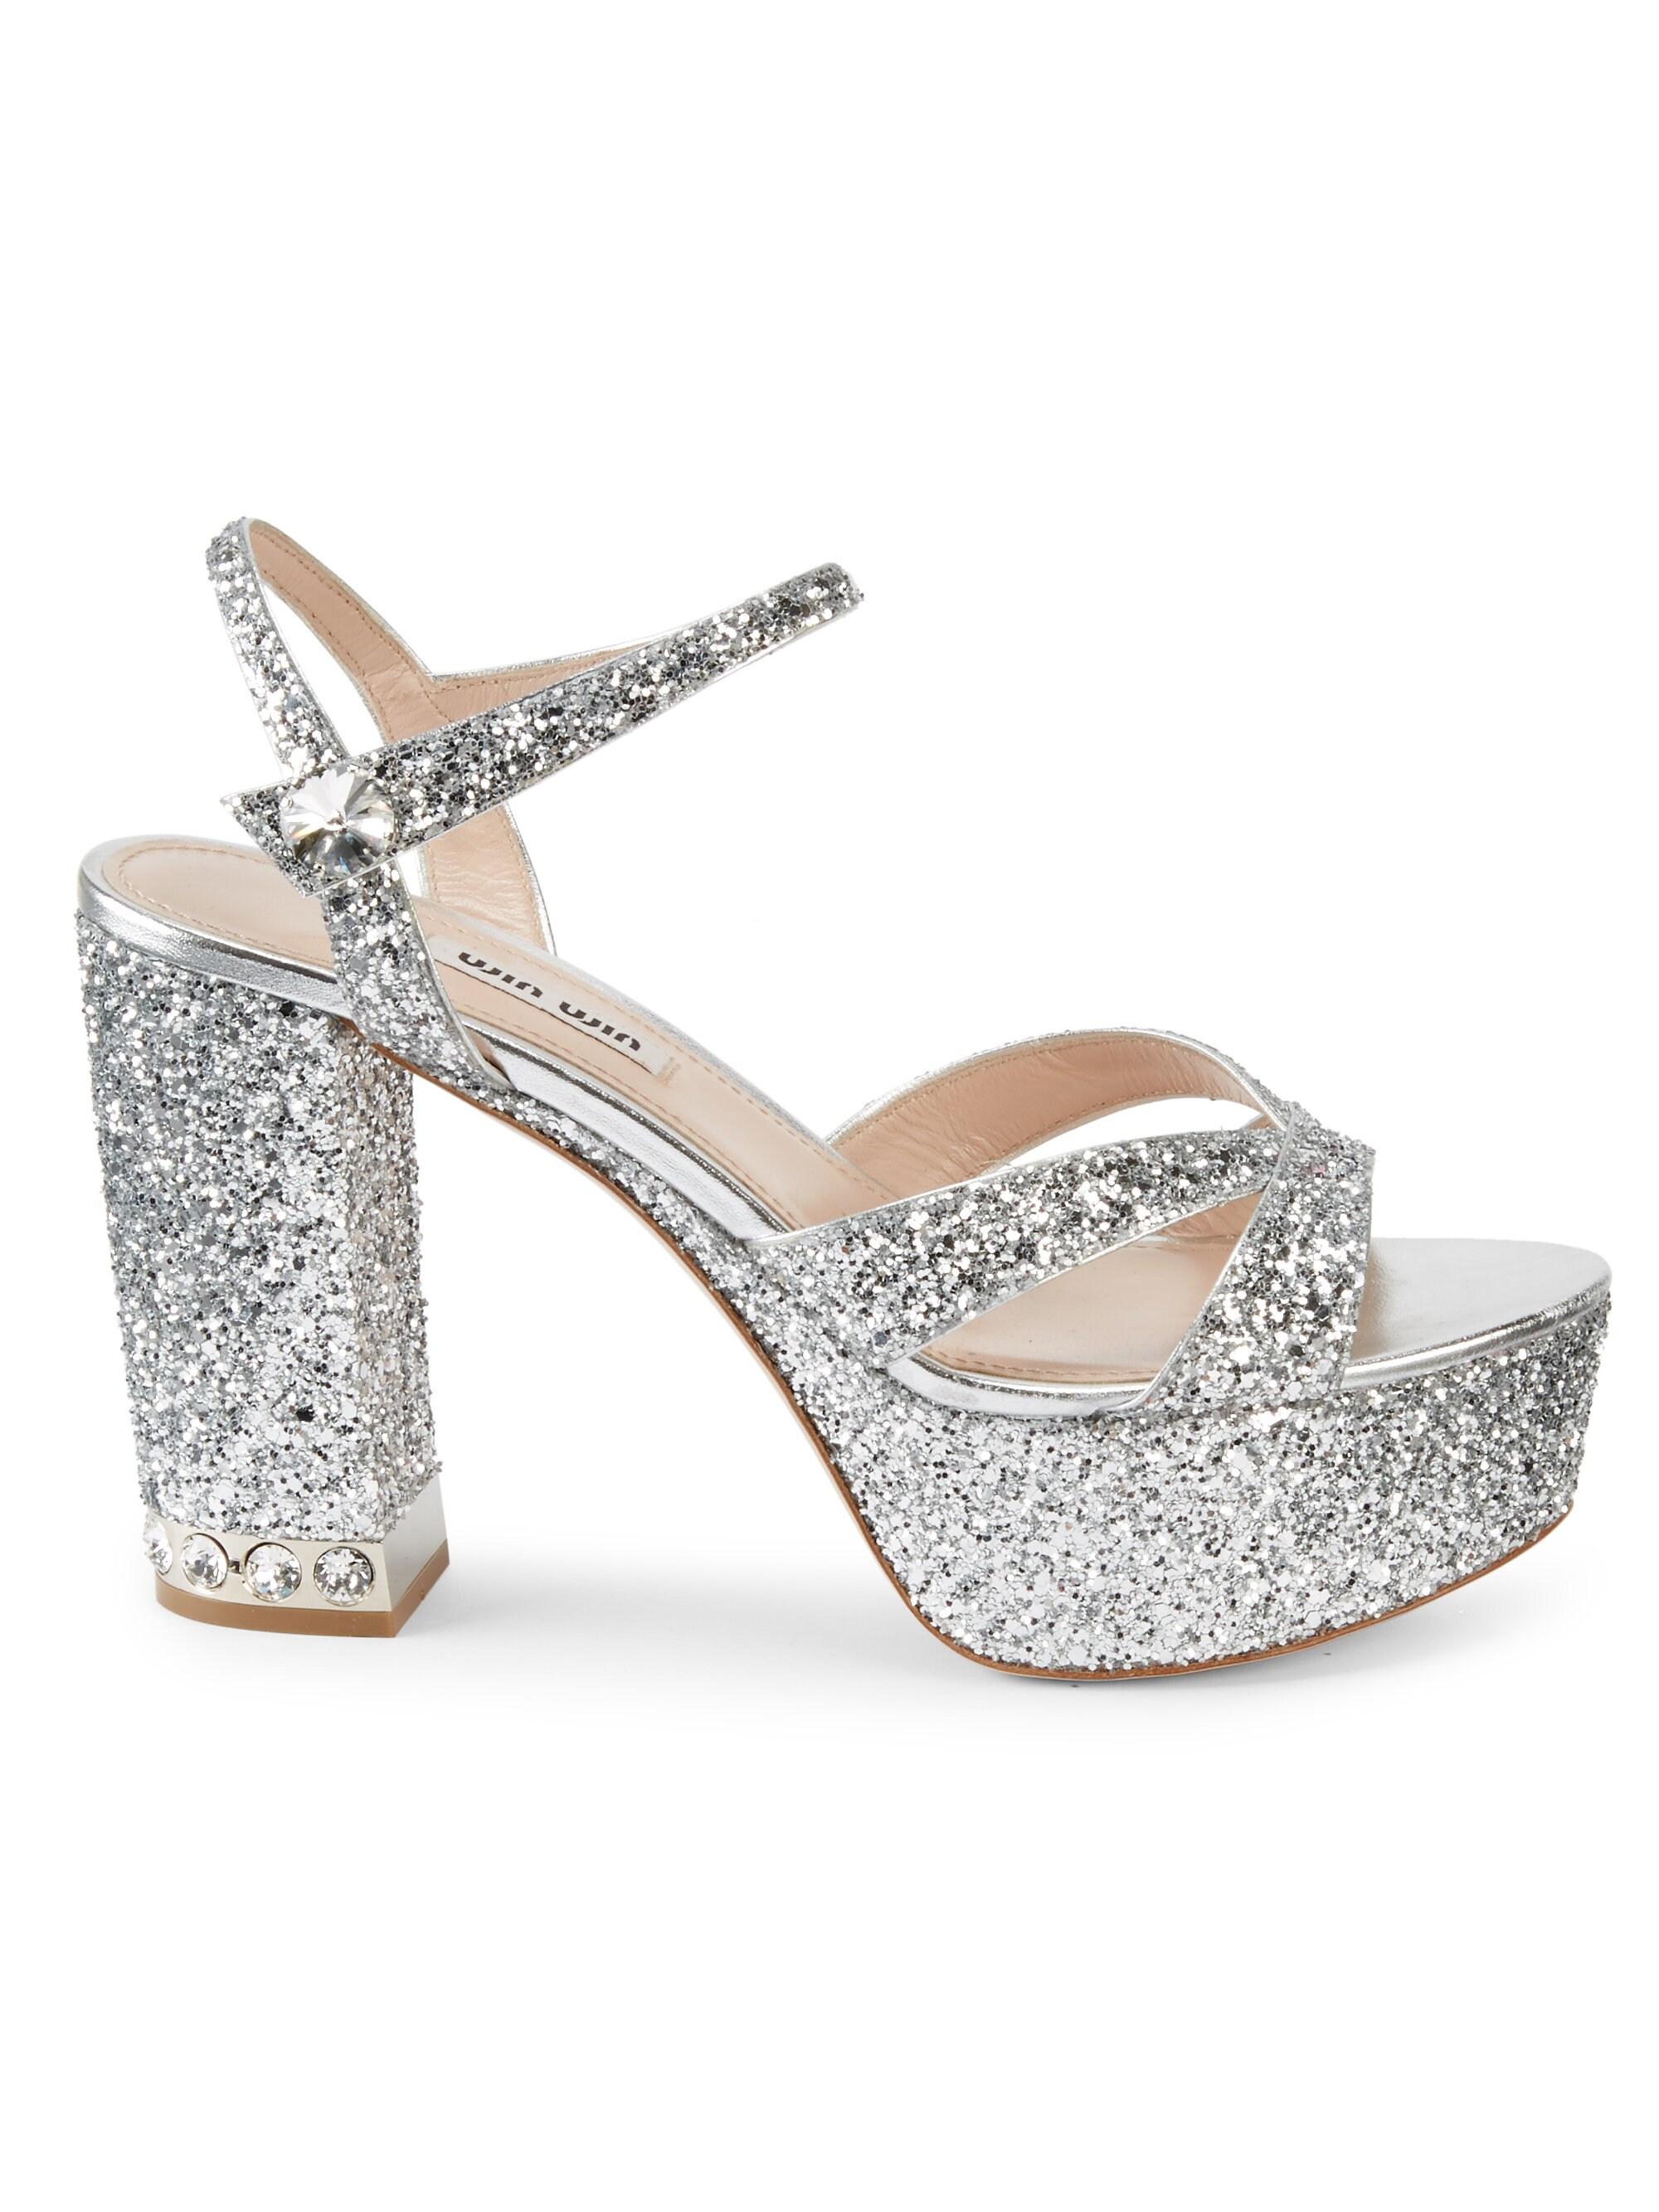 Miu Miu Glitter Platform Sandals in Silver (Metallic) - Lyst